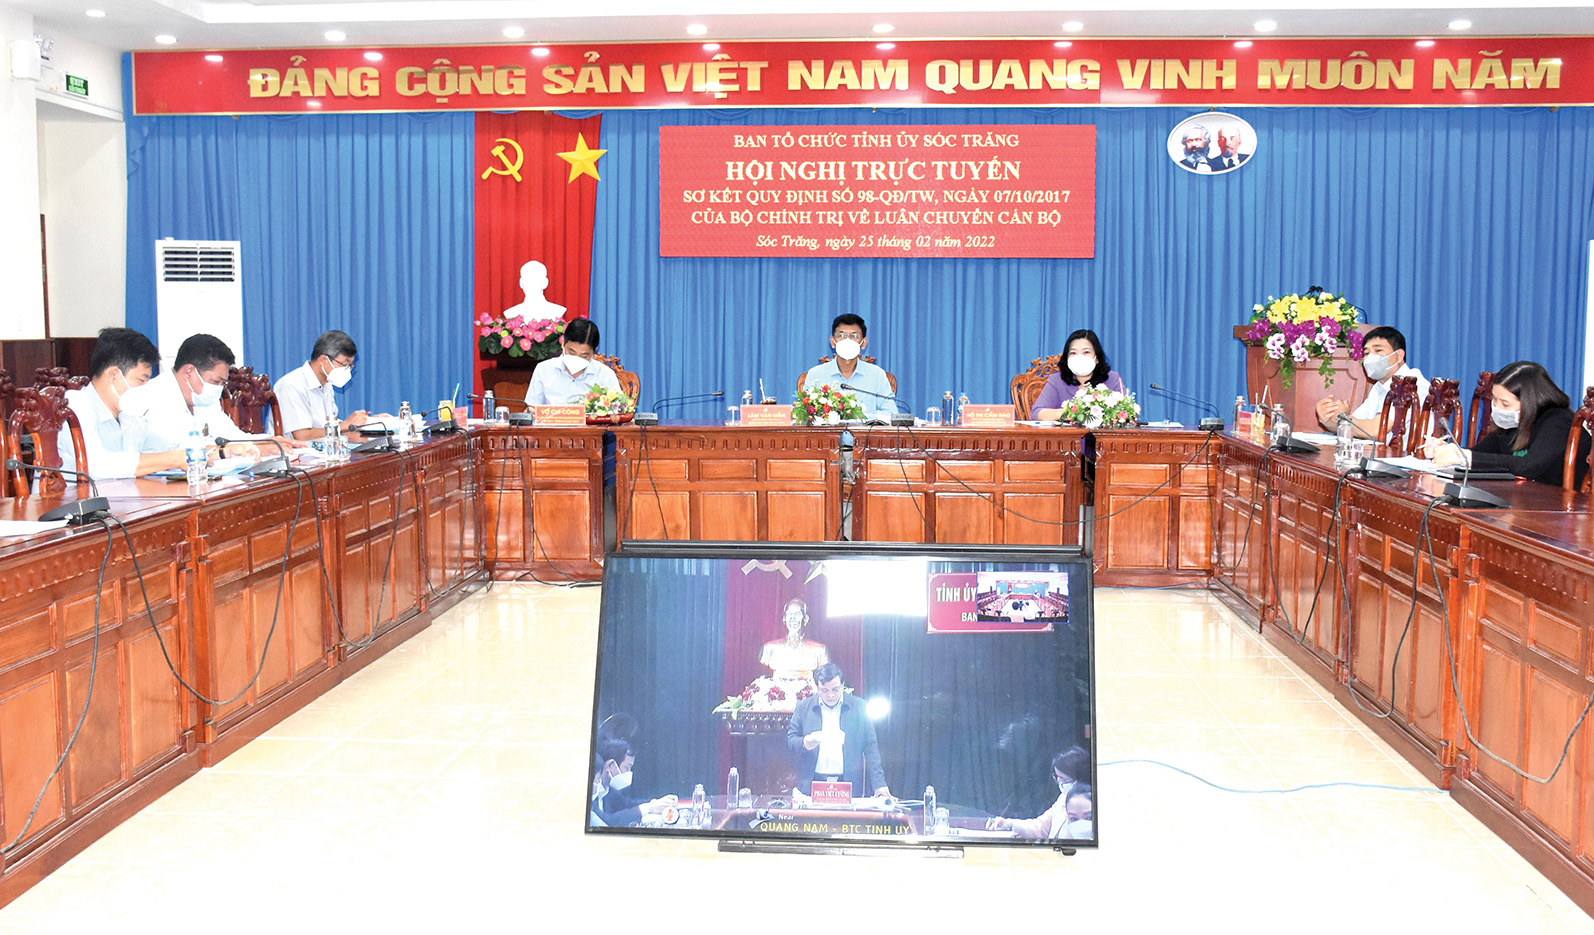 Đồng chí Lâm Văn Mẫn - Ủy viên Trung ương Đảng, Bí thư Tỉnh ủy Sóc Trăng (ngồi giữa) tại Hội nghị trực tuyến sơ kết Quy định số 98-QĐ/TW, ngày 7-10-2017 của Bộ Chính trị về luân chuyển cán bộ.